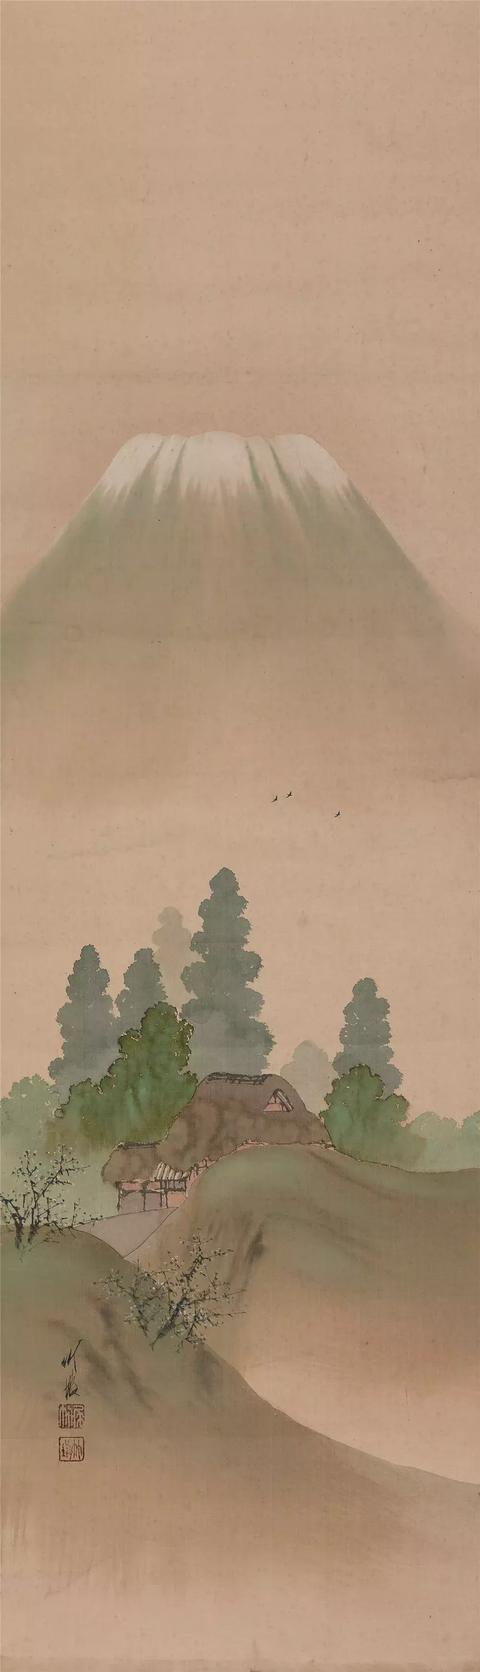 尾竹竹坡 1878 1936 是日本明治至昭和 堆糖 美图壁纸兴趣社区